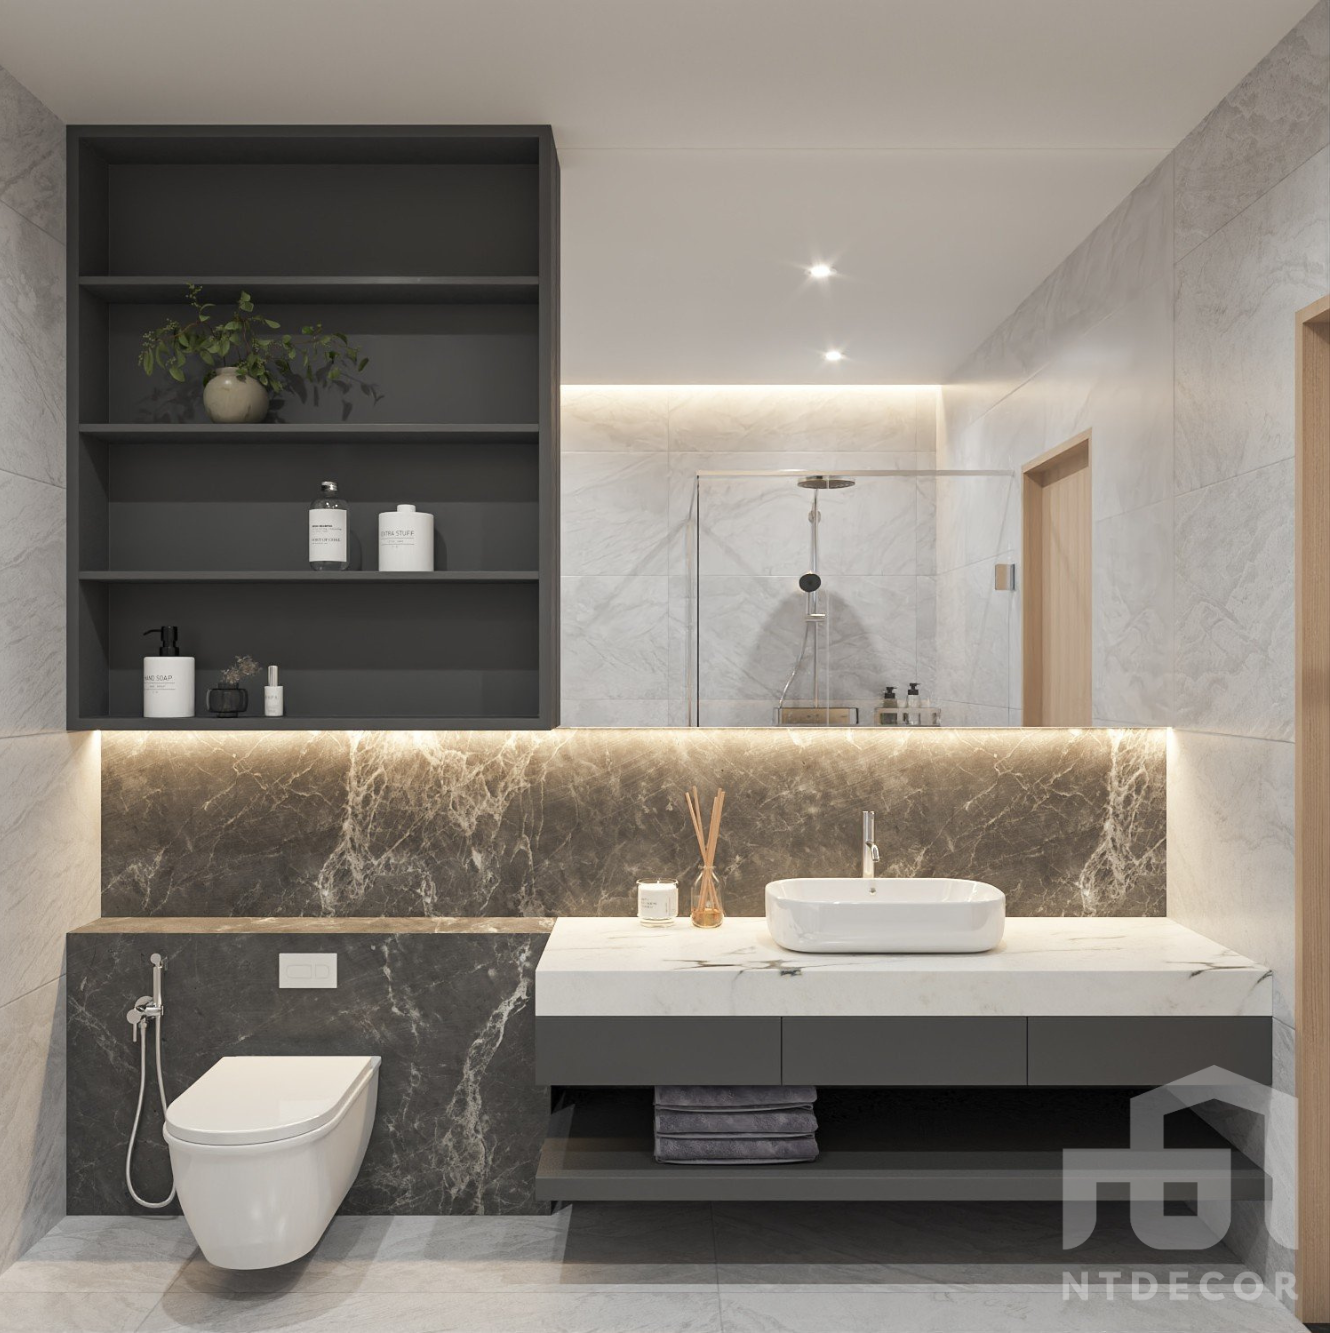 WC 3D Design of Hieu Hang's House Interior Design Modern Style | NTDecor